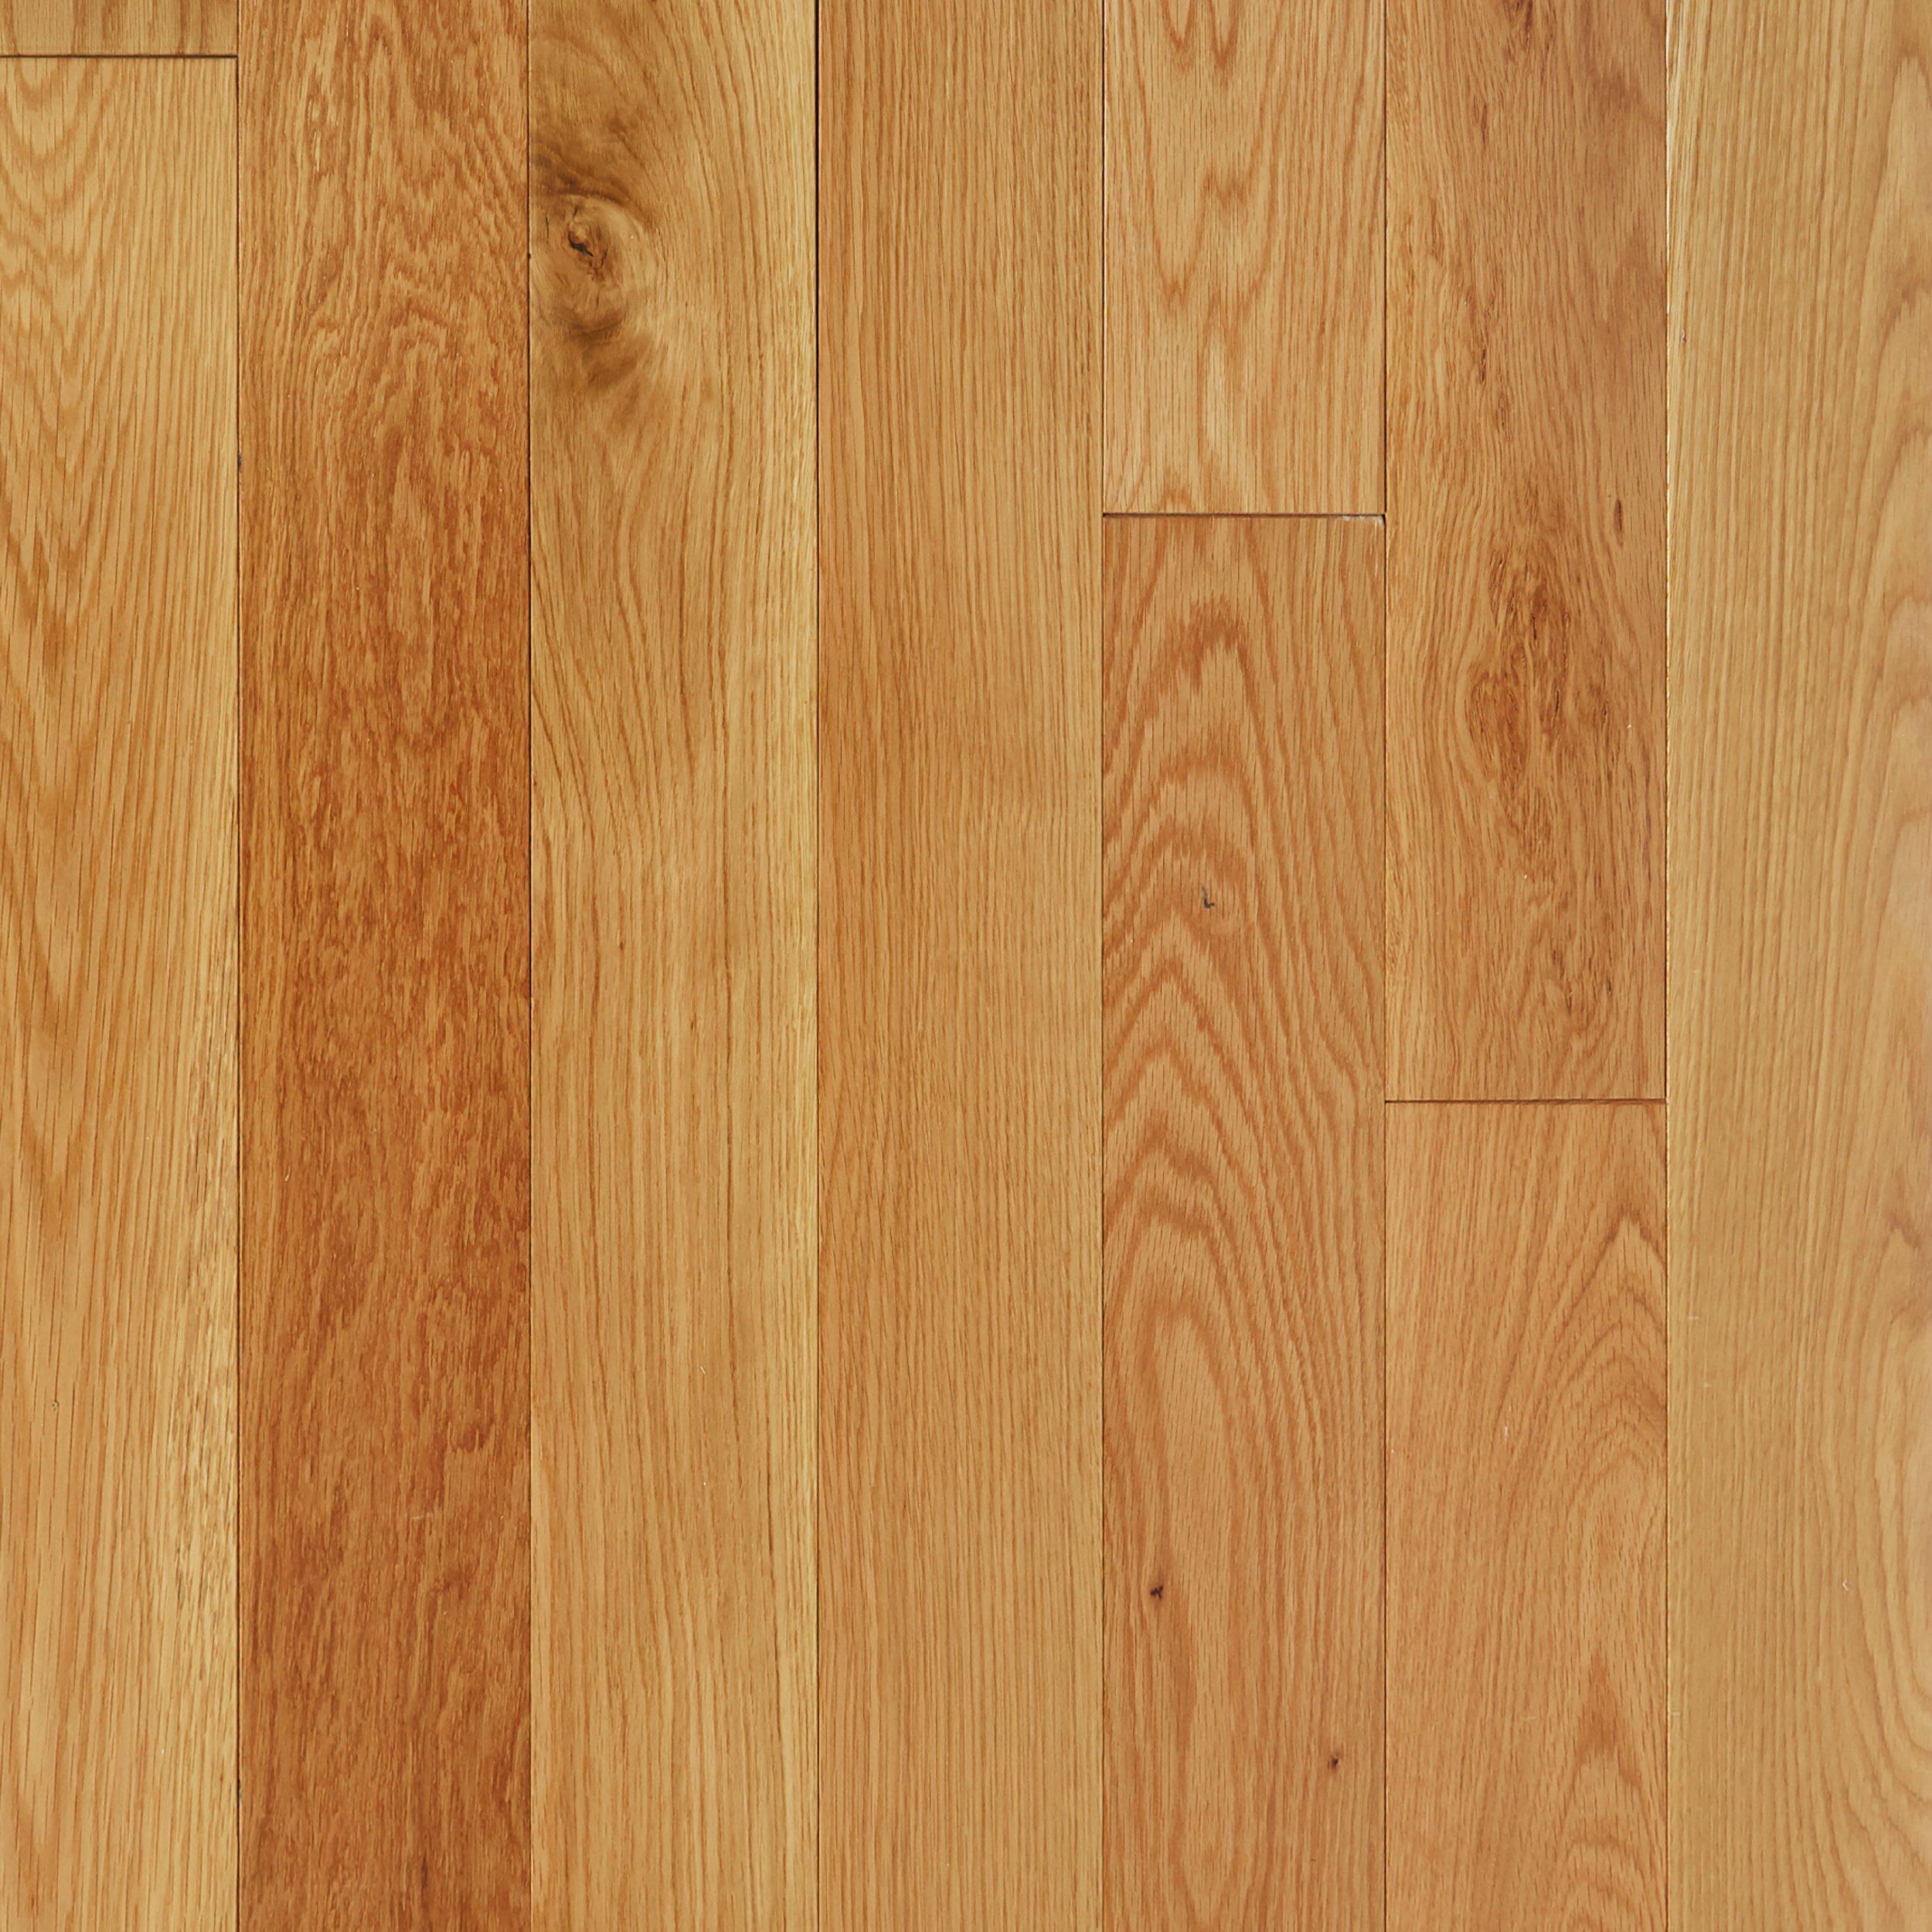 Natural White Oak Smooth Solid Hardwood, Premium White Oak Hardwood Flooring